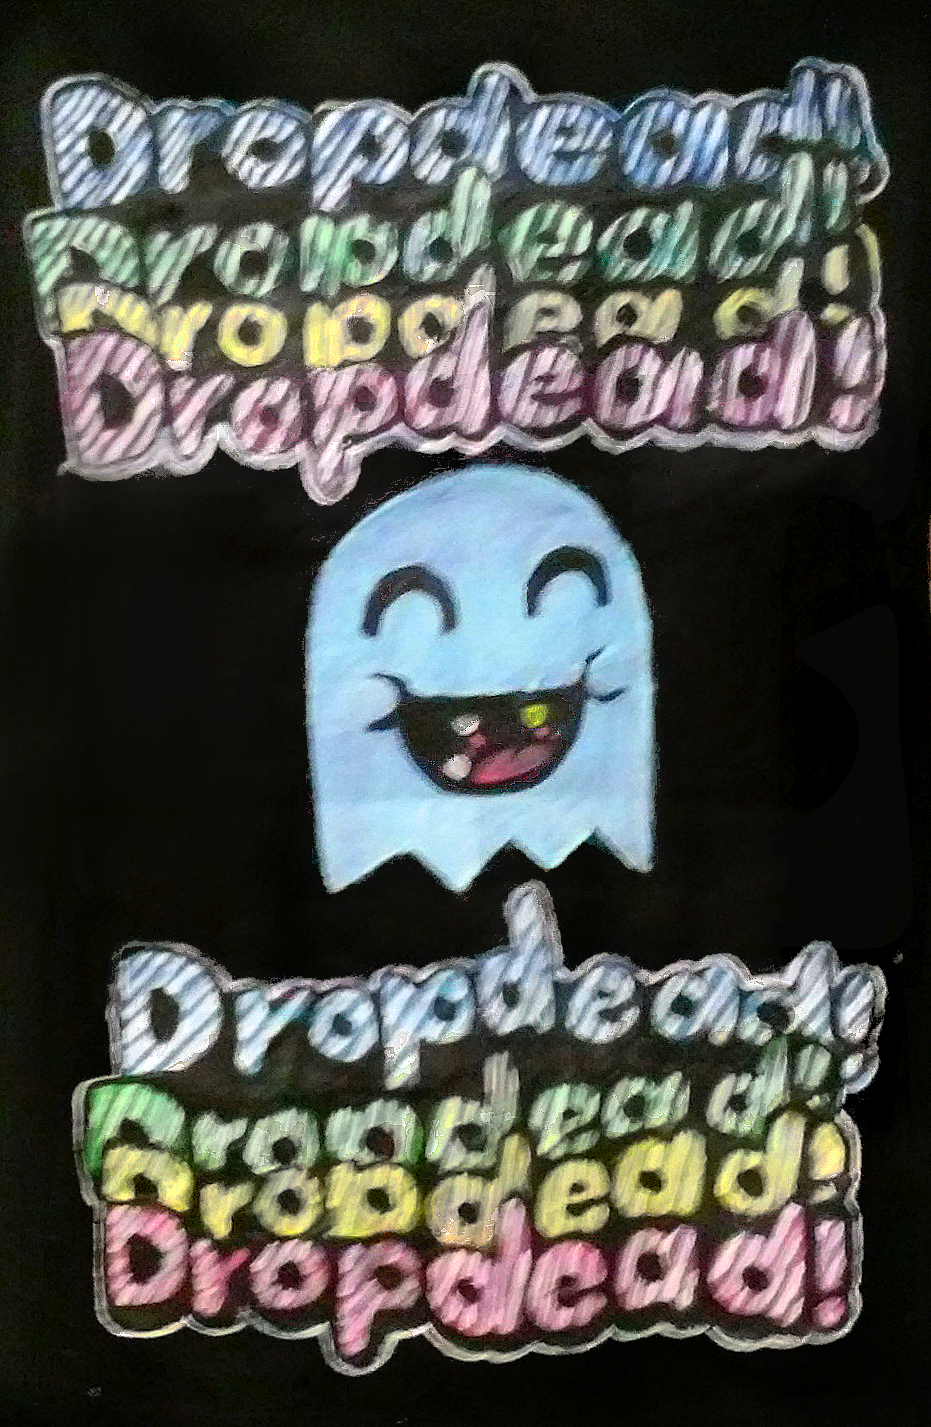 Drop Dead t-shirt design